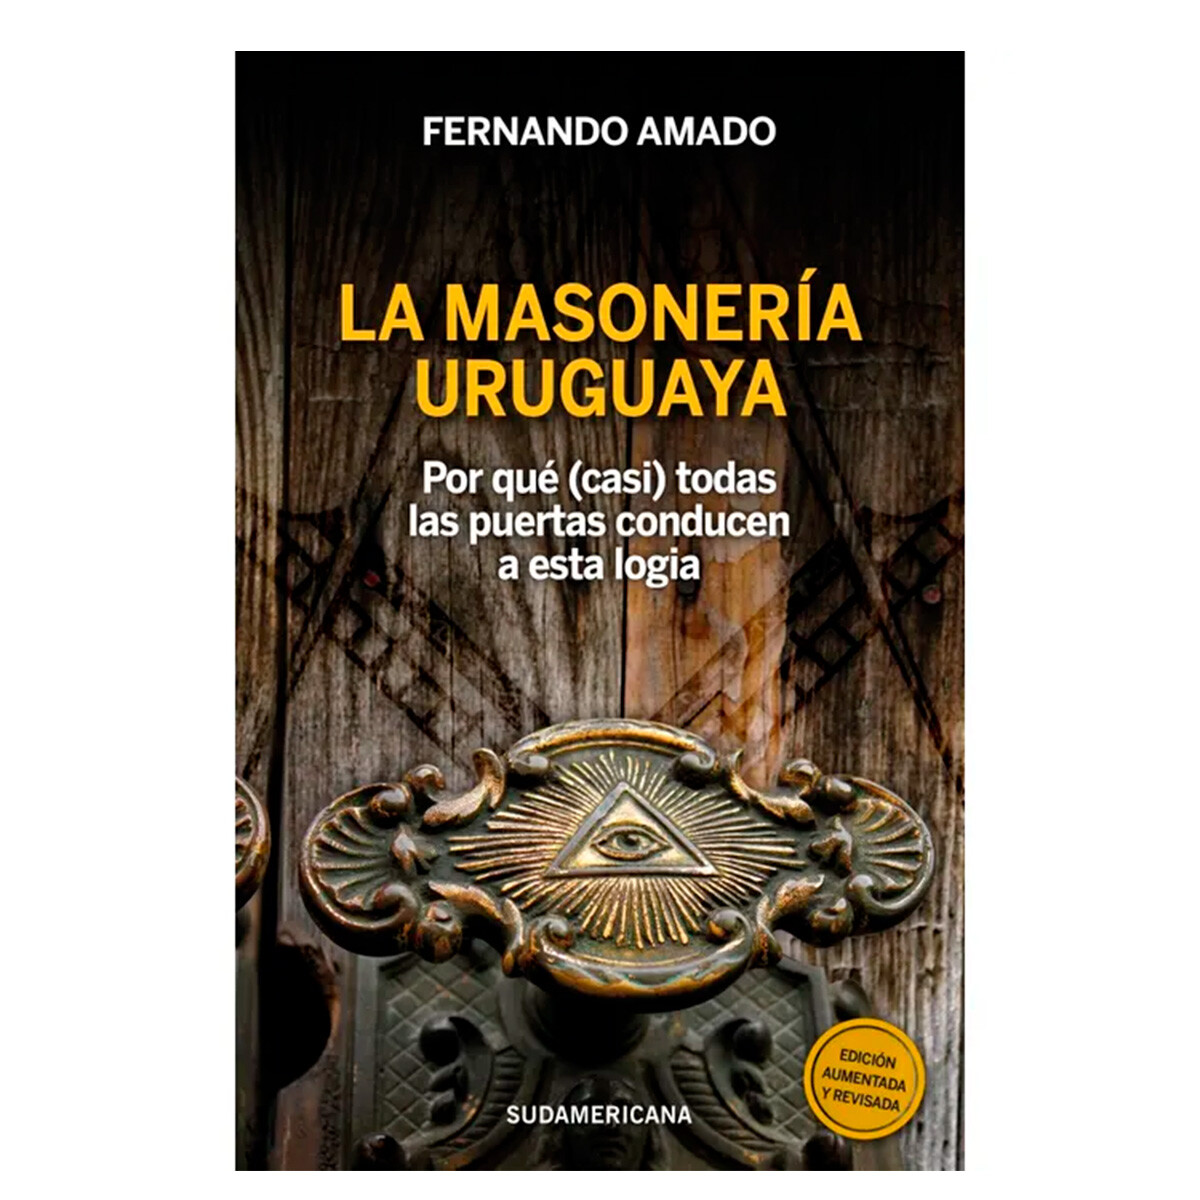 La Masoneria Uruguaya de Fernando Amado - 001 